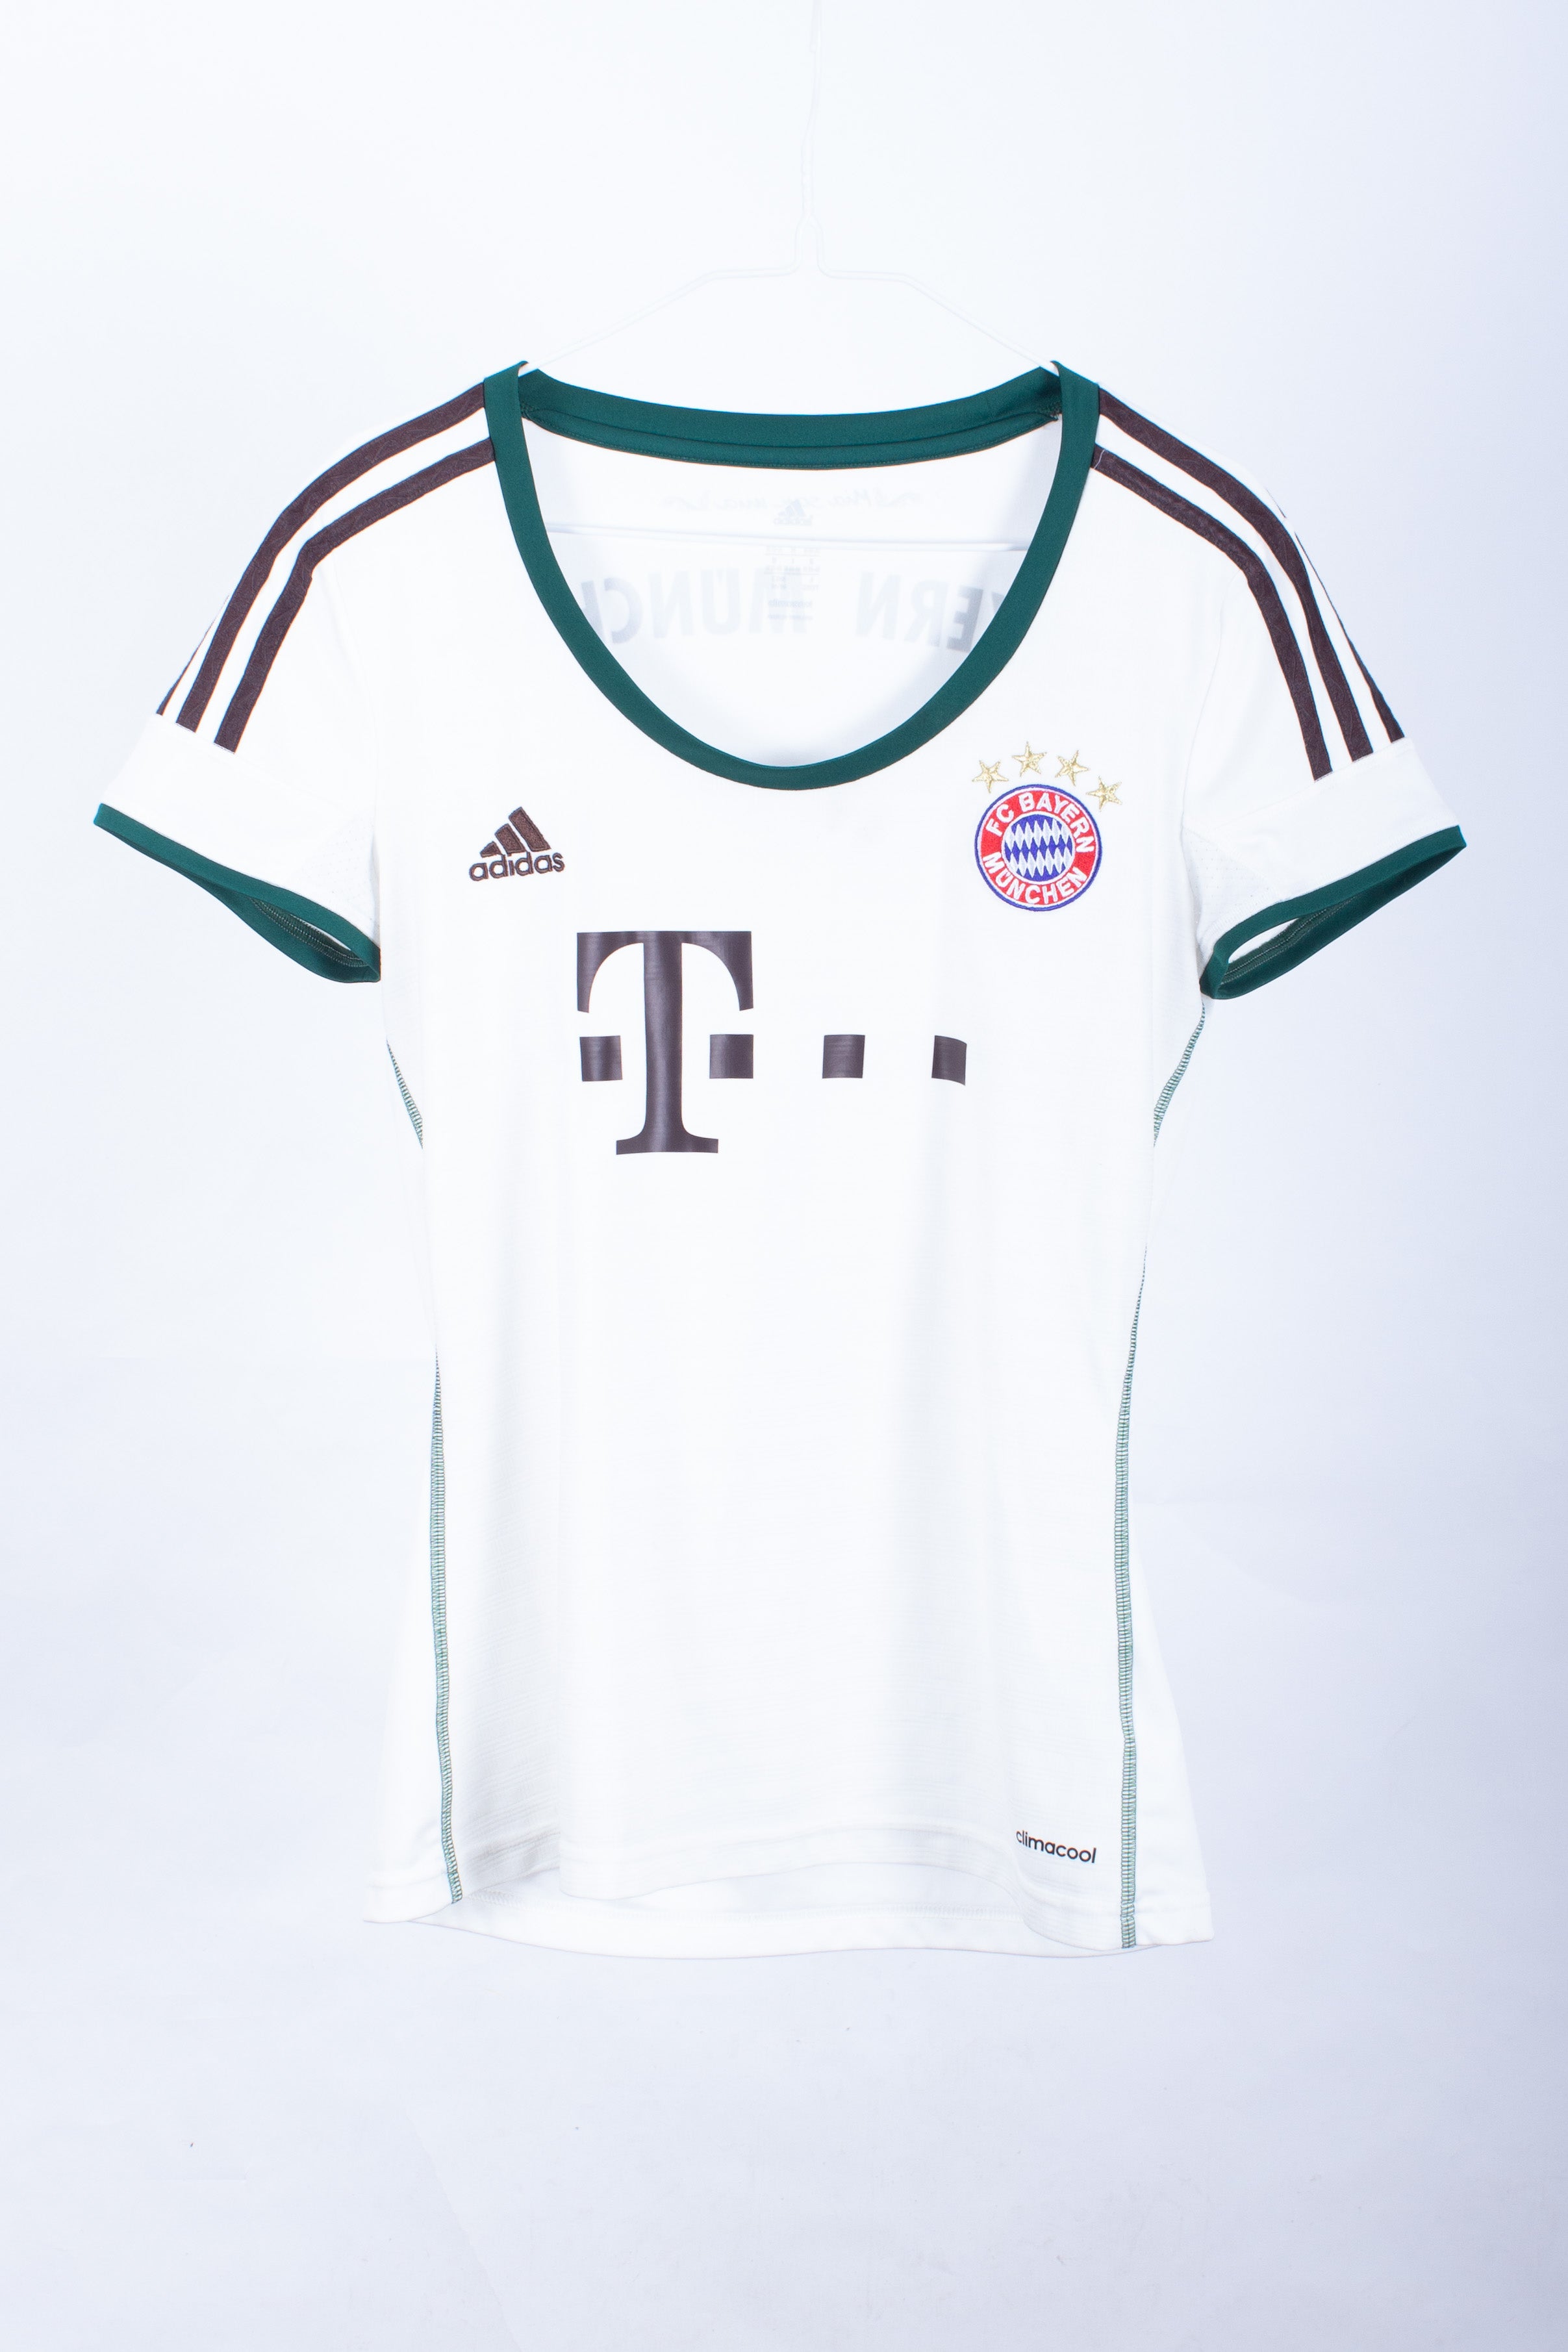 Womens Bayern Munich 2013/14 Away Shirt